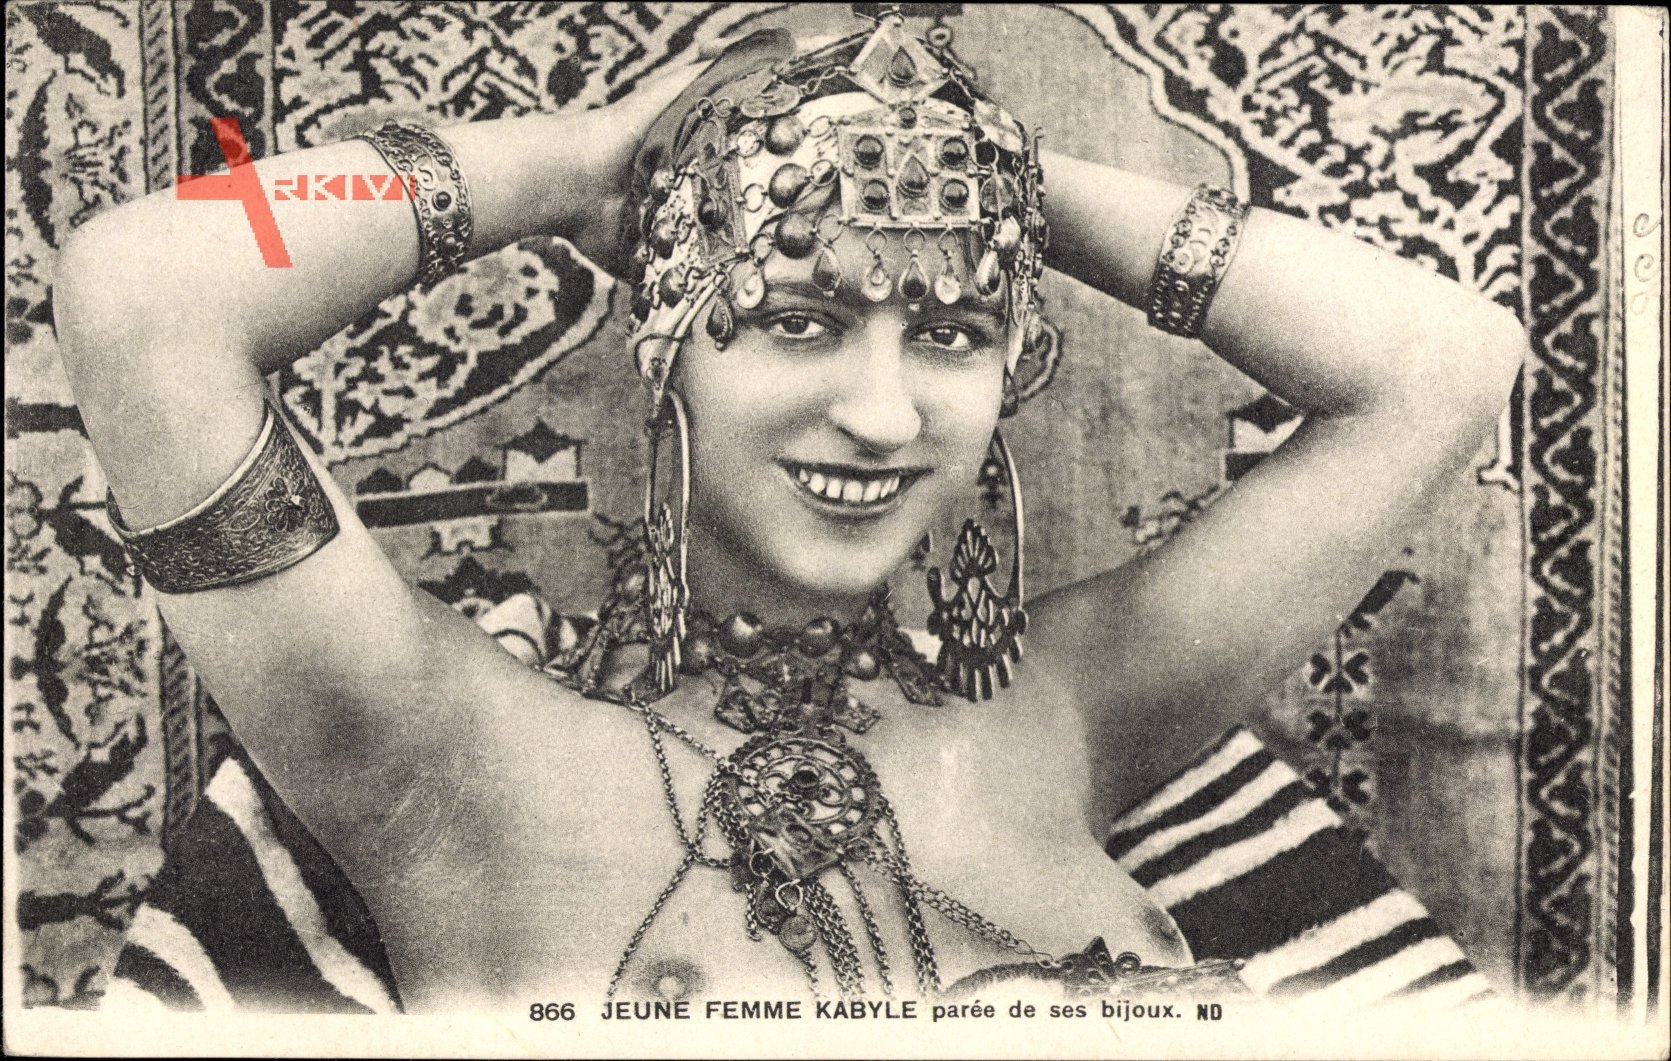 Jeune Femme Kabyle paree de ses bijoux, Frau mit entblöster Brust